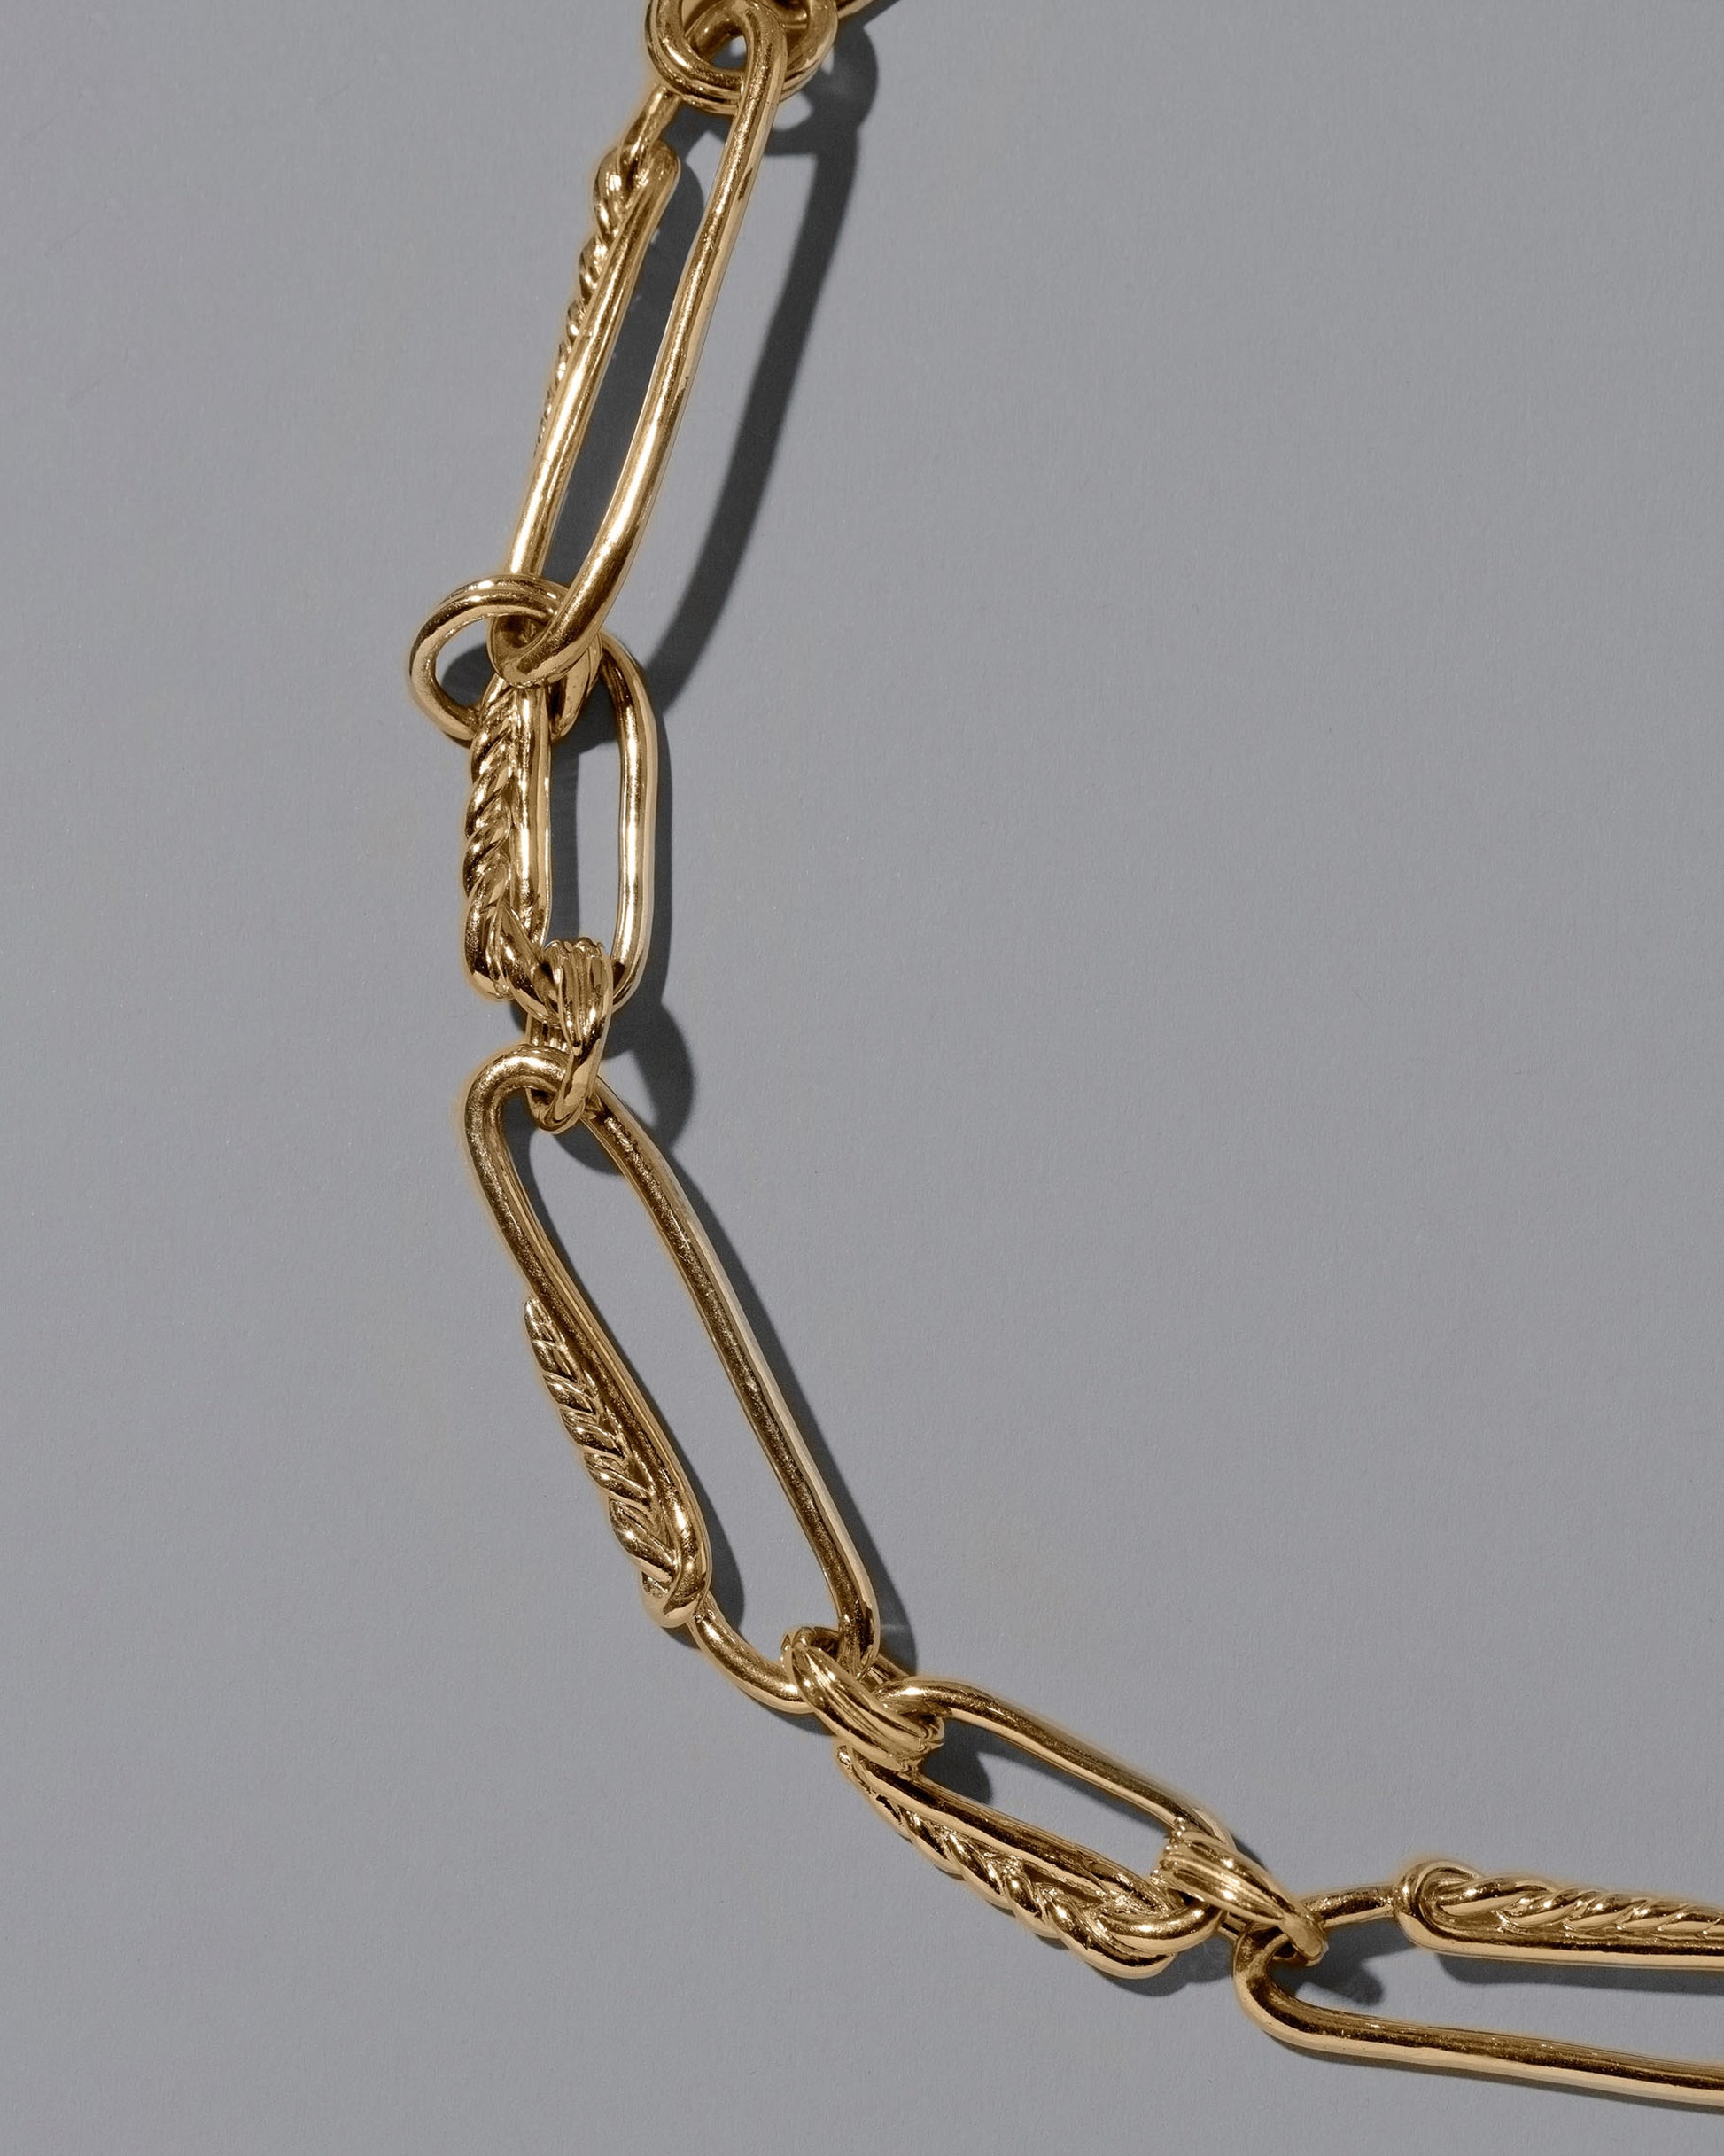 Closeup details of the CRZM 22k Gold Ophiolite Bracelet on light color background.